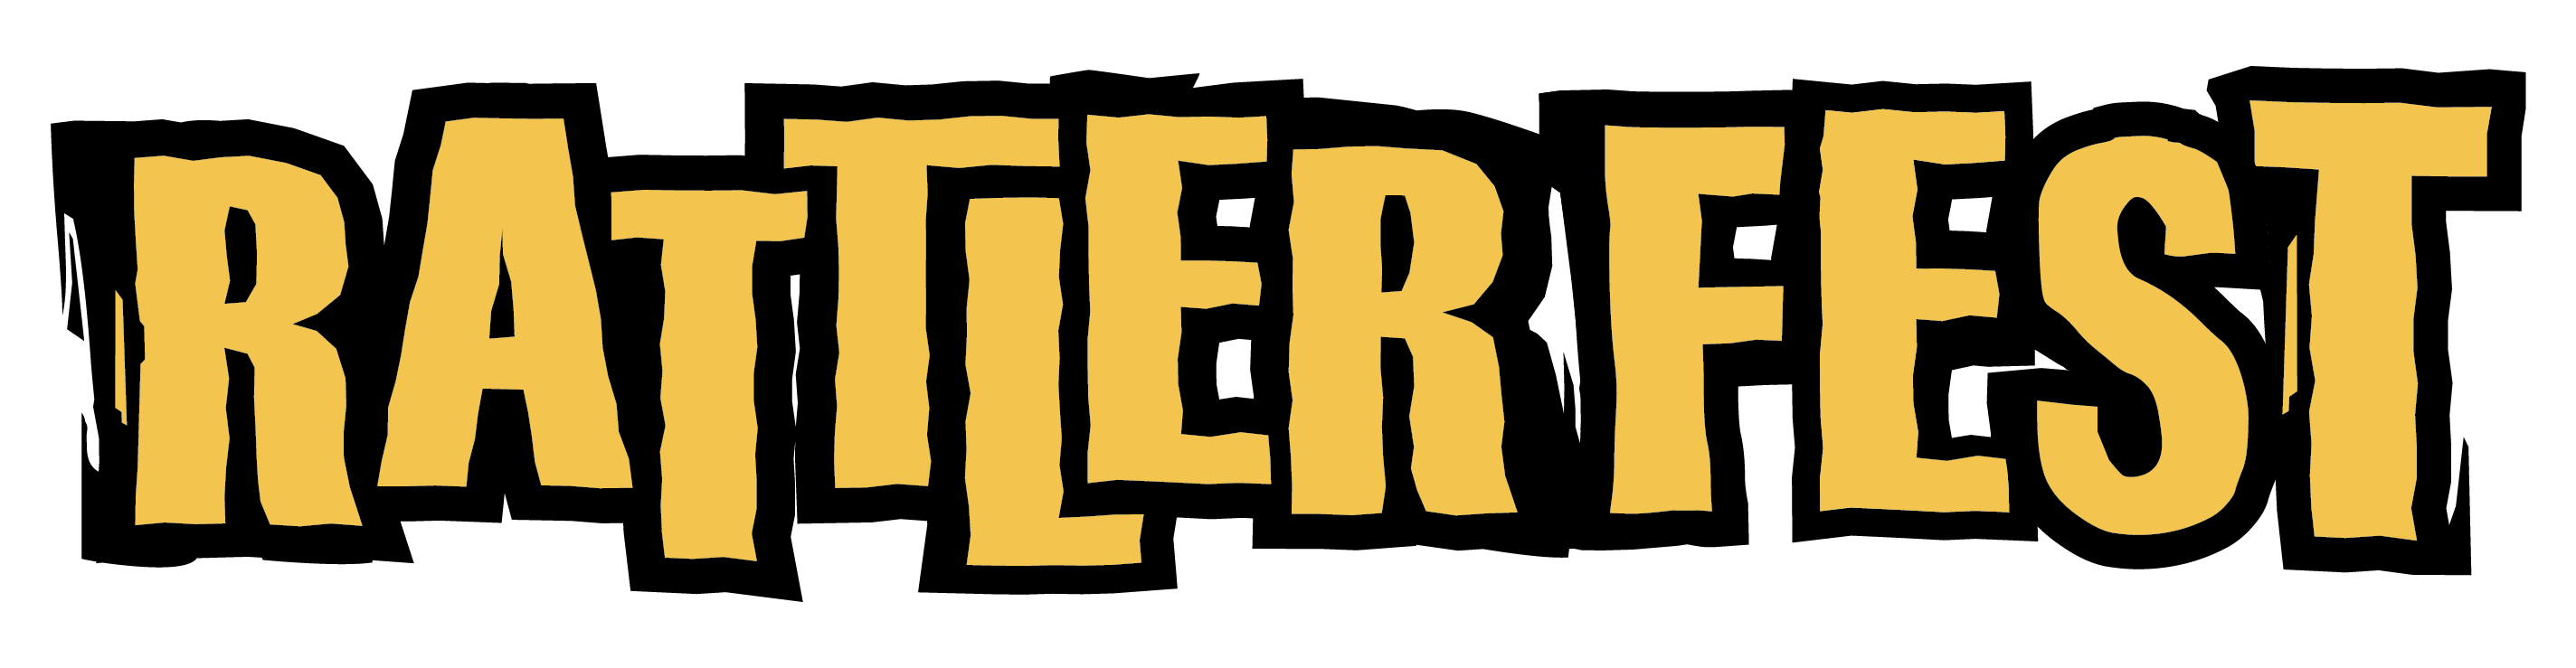 Rattler Fest Logo